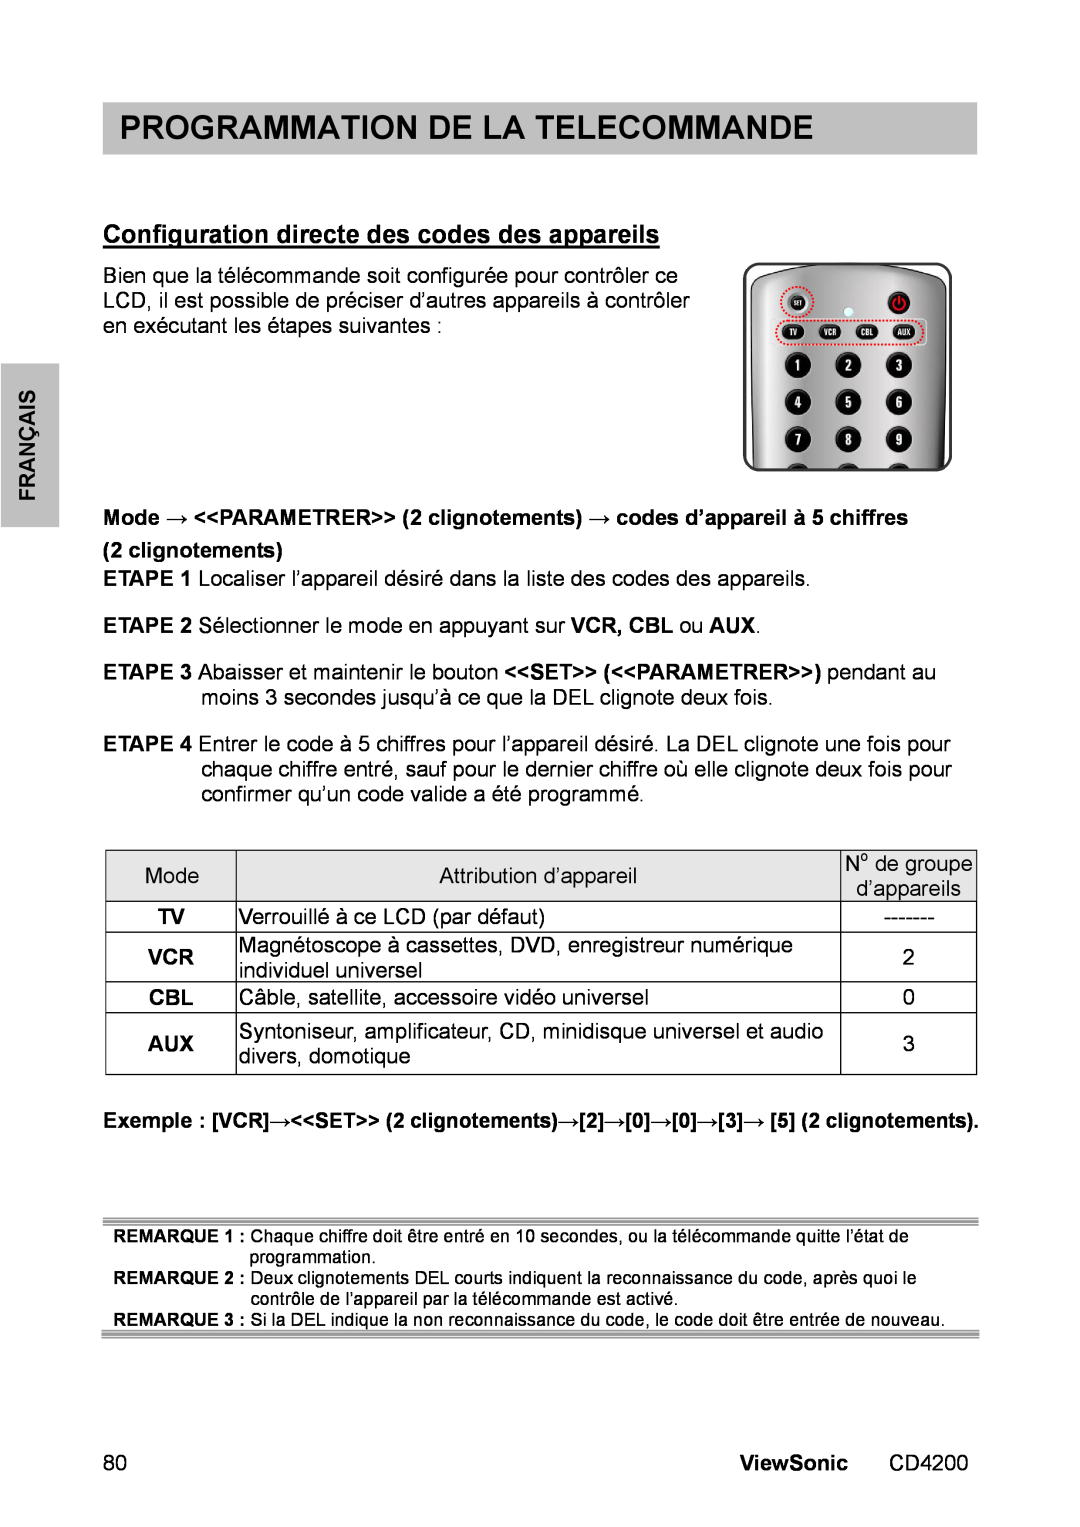 ViewSonic CD4200 Programmation De La Telecommande, Configuration directe des codes des appareils, Français, ViewSonic 